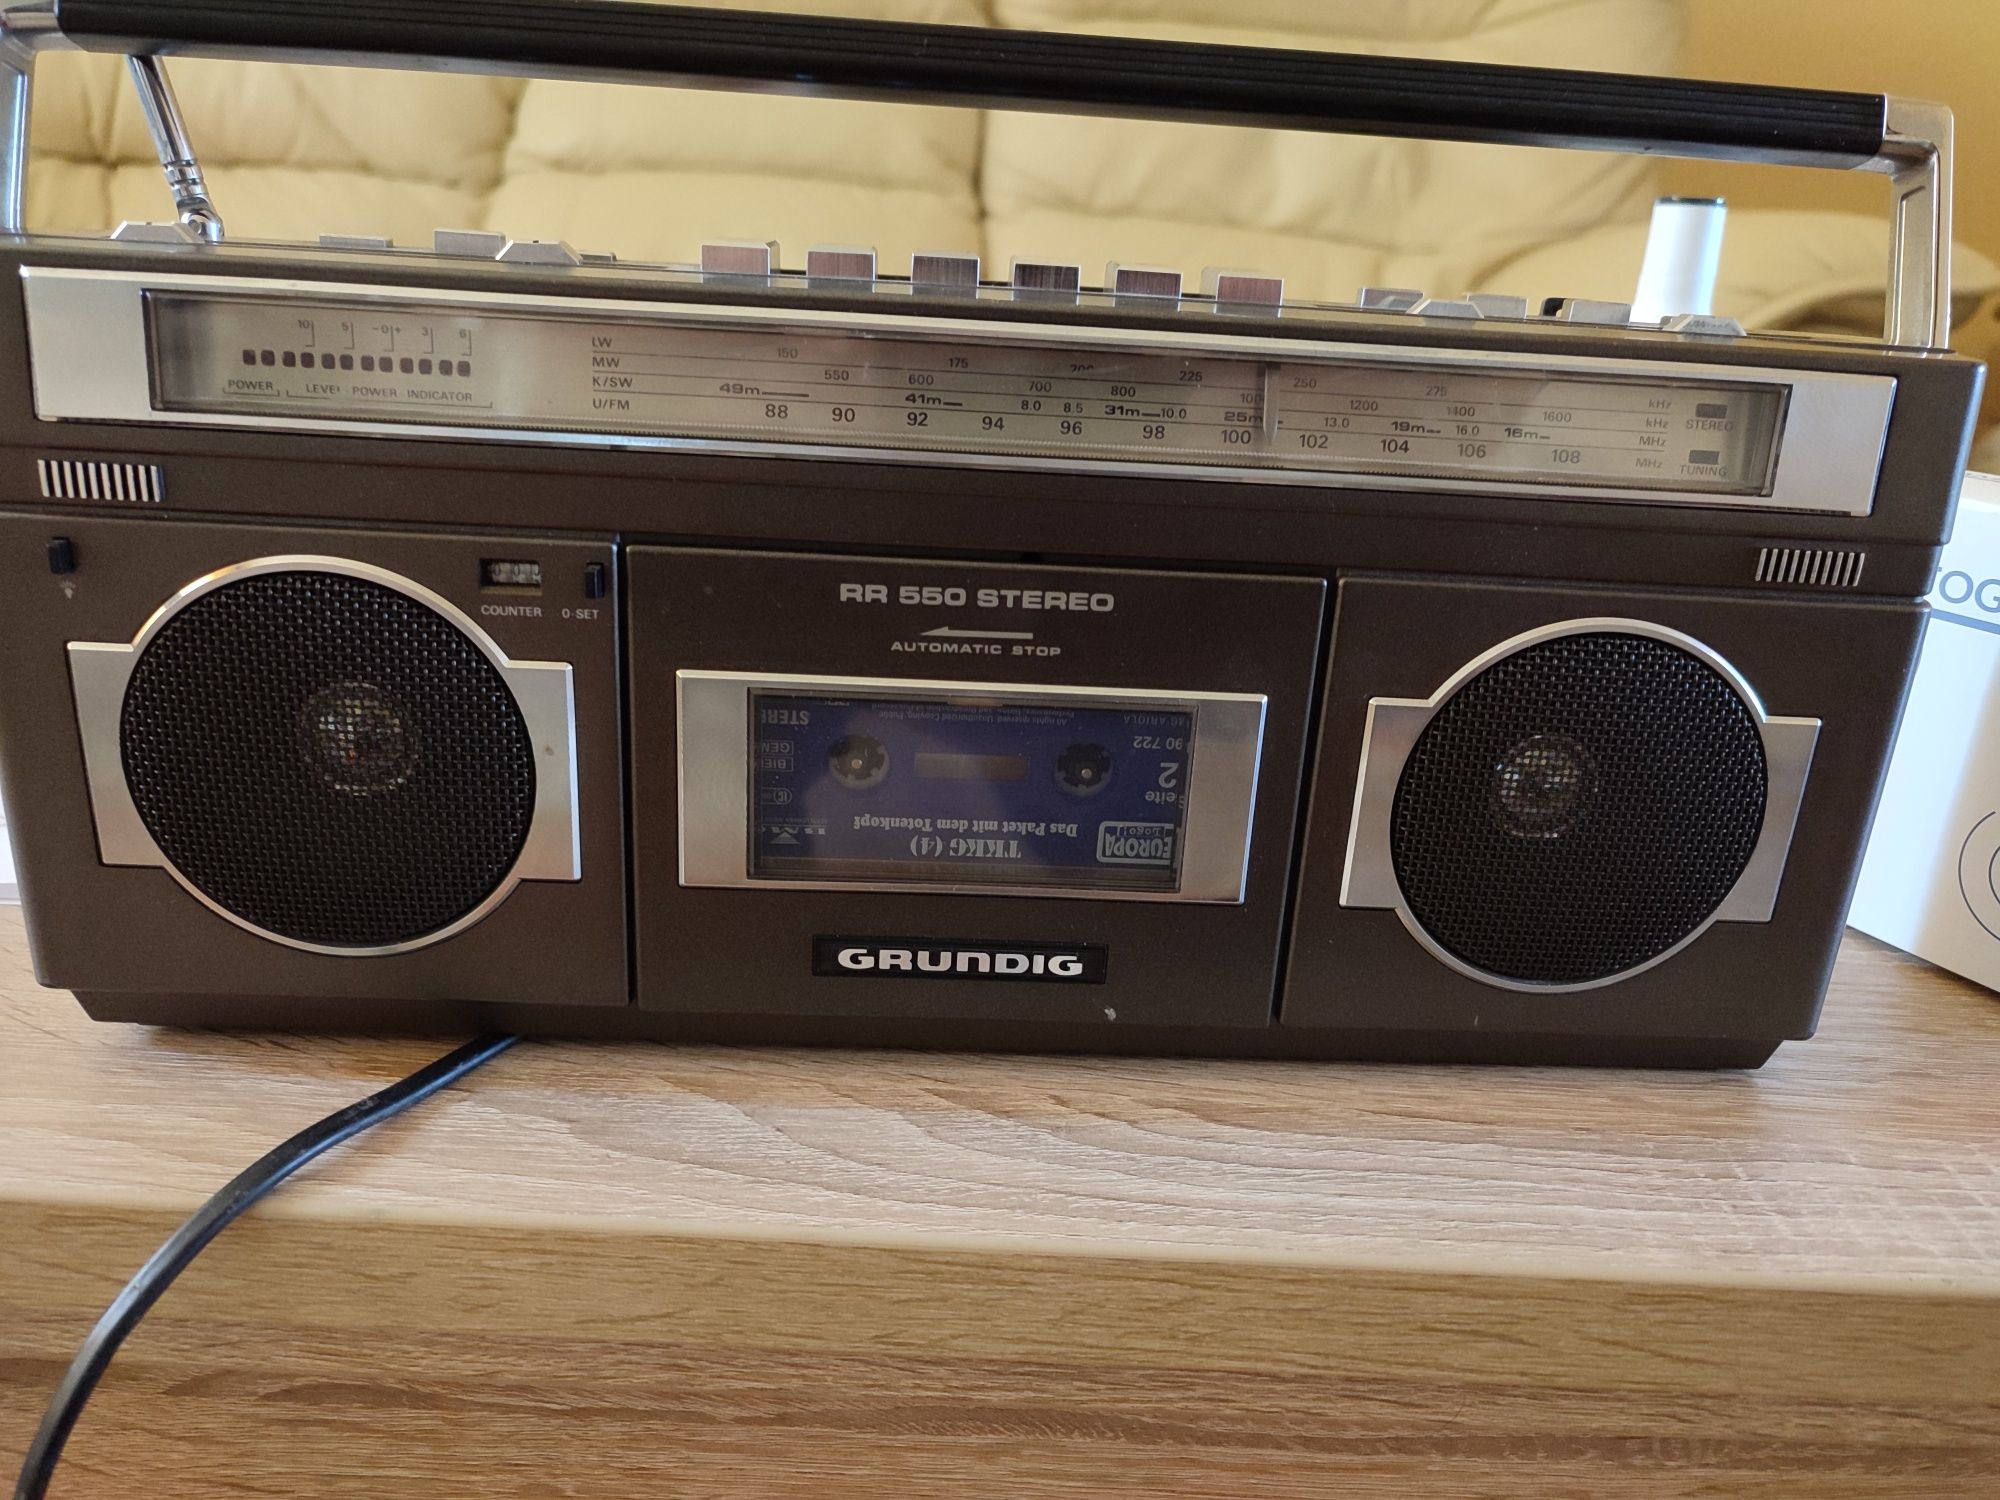 Radio Grundig RR 550 stereo model rar